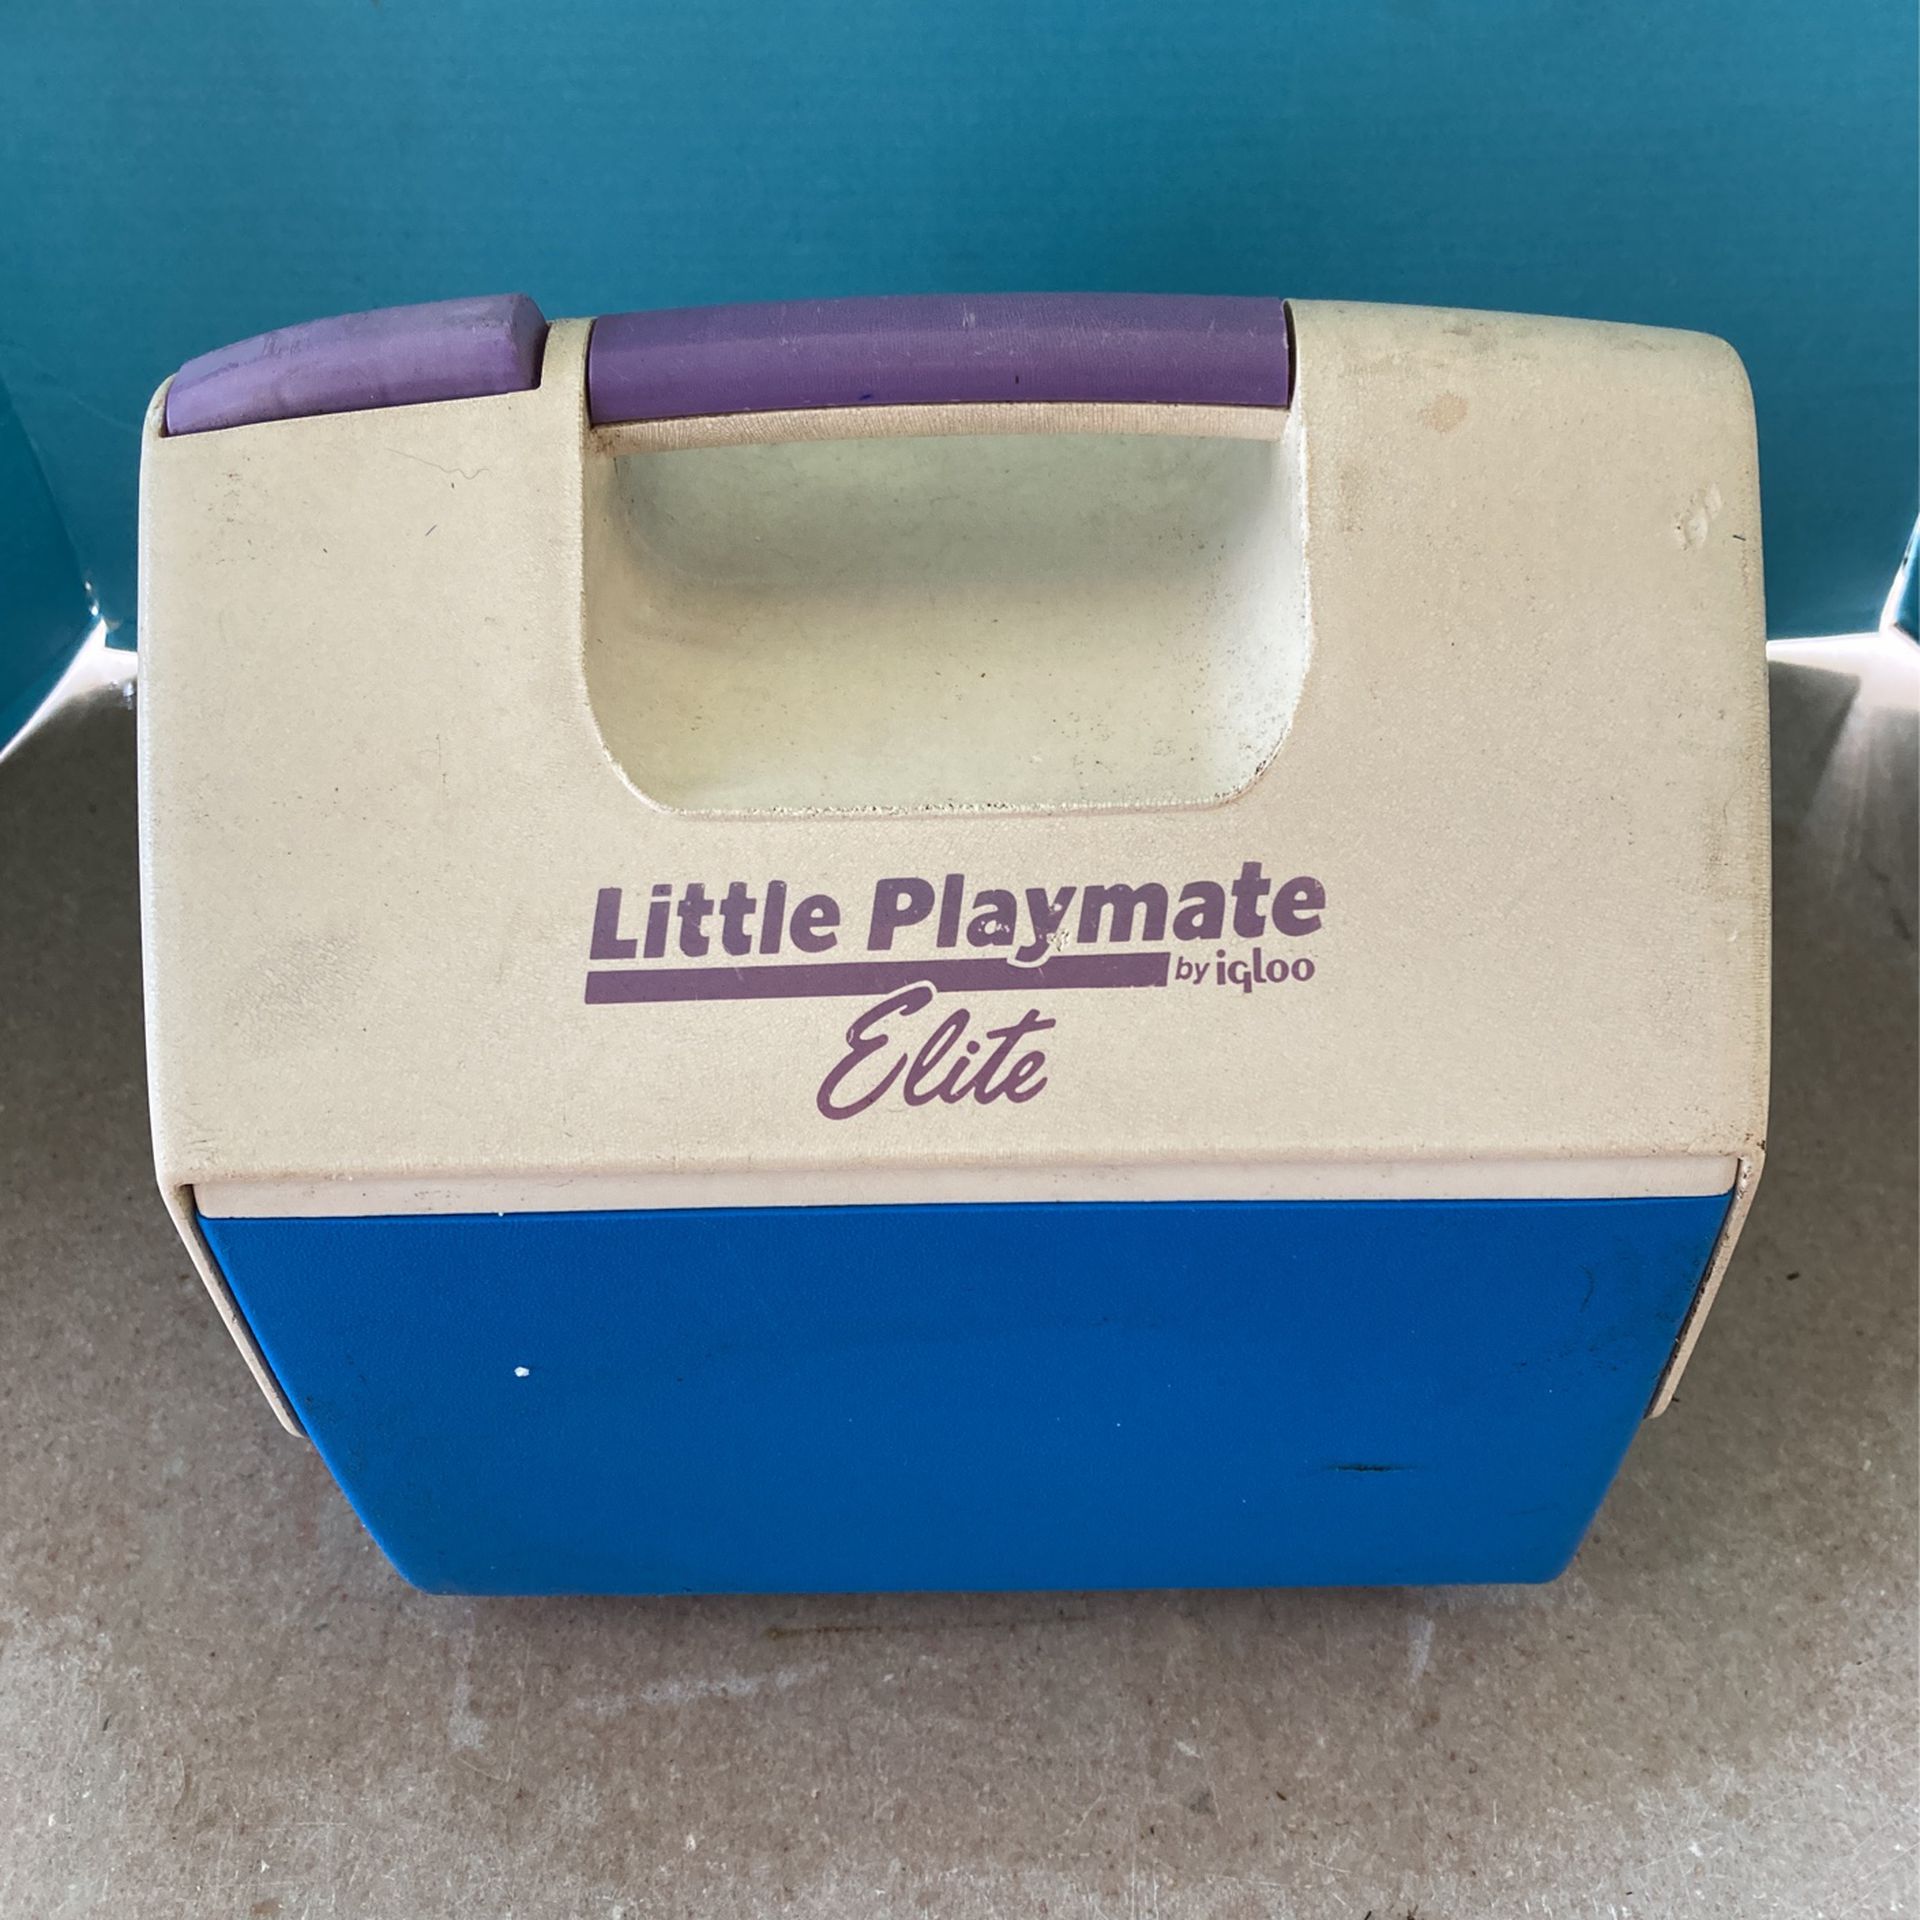 Little playmate, elite igloo cooler